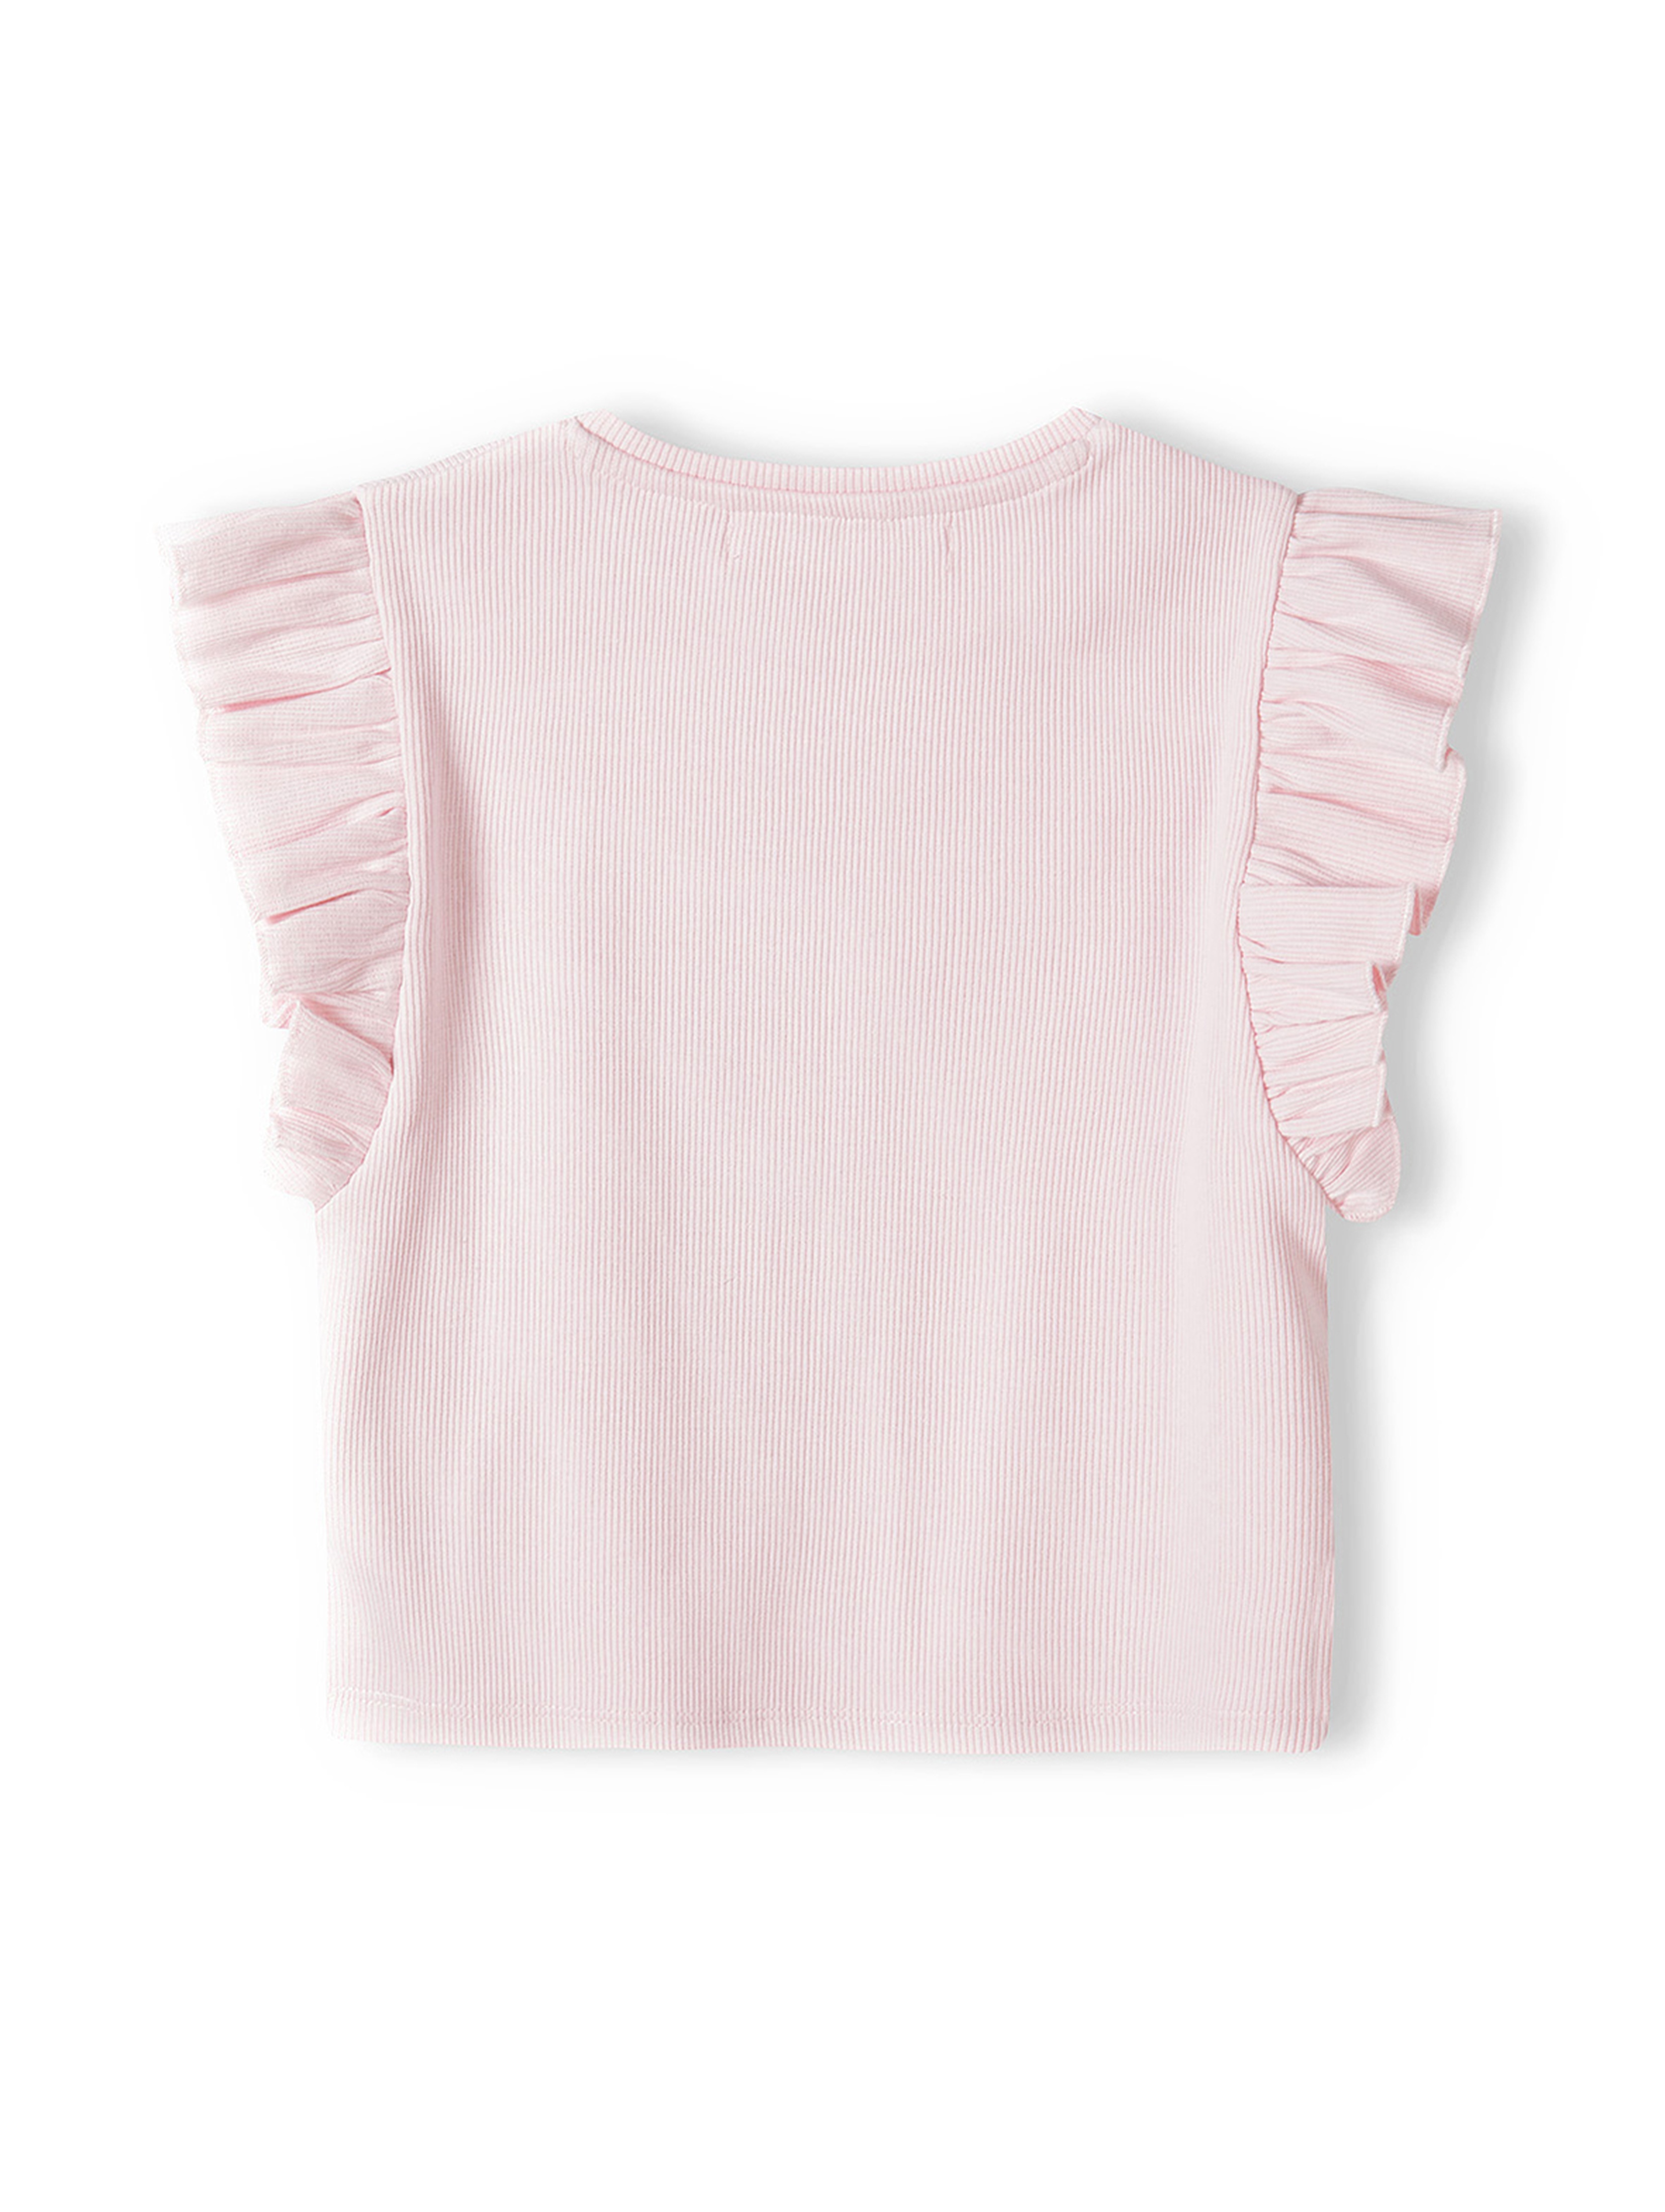 Dziewczęca bluzka z krótkim rękawem i falbanką- różowa